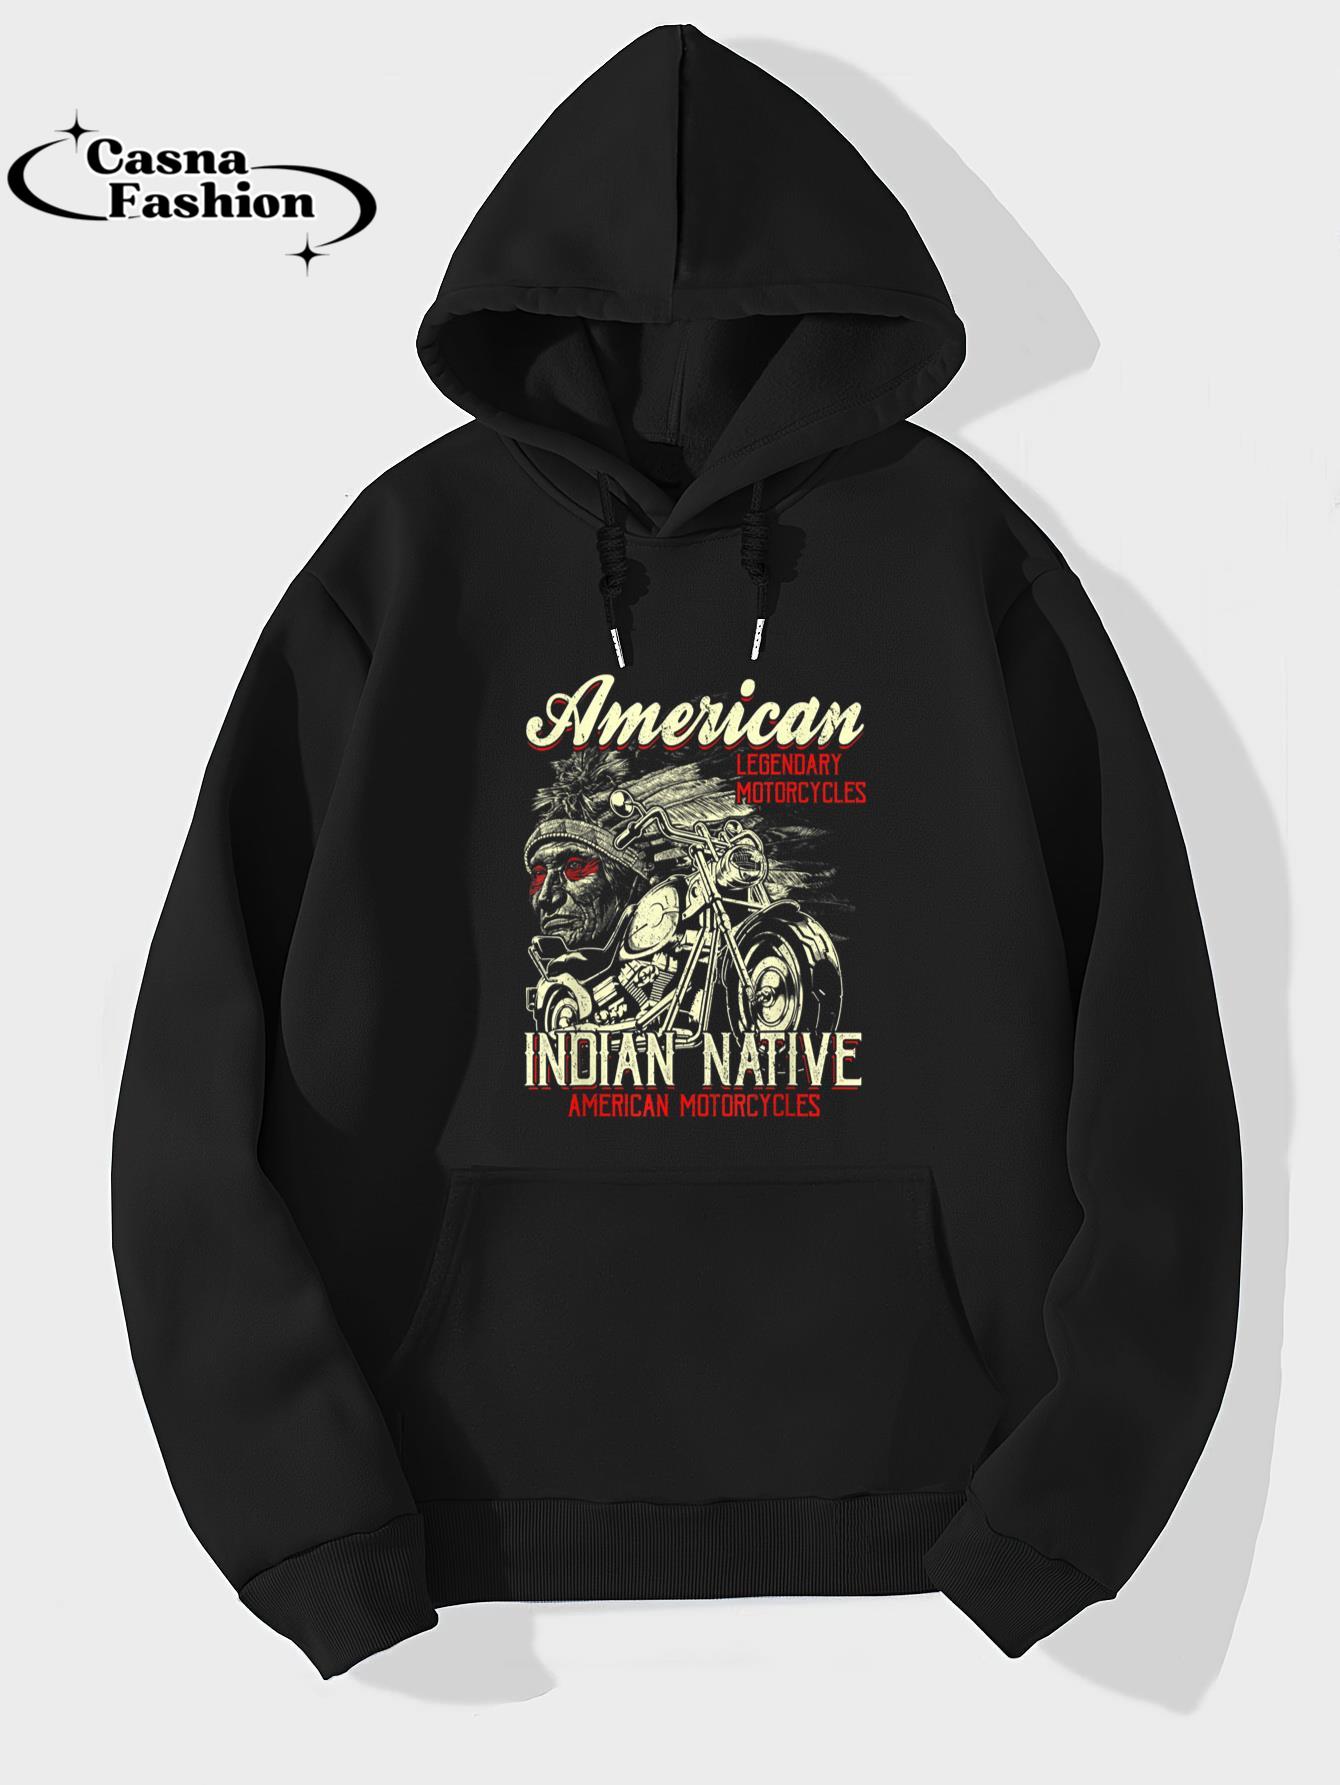 casnafashion_Hoodie_Retro Vintage American Motorcycle Indian for Old Biker T-Shirt_hoodie_black hoodie